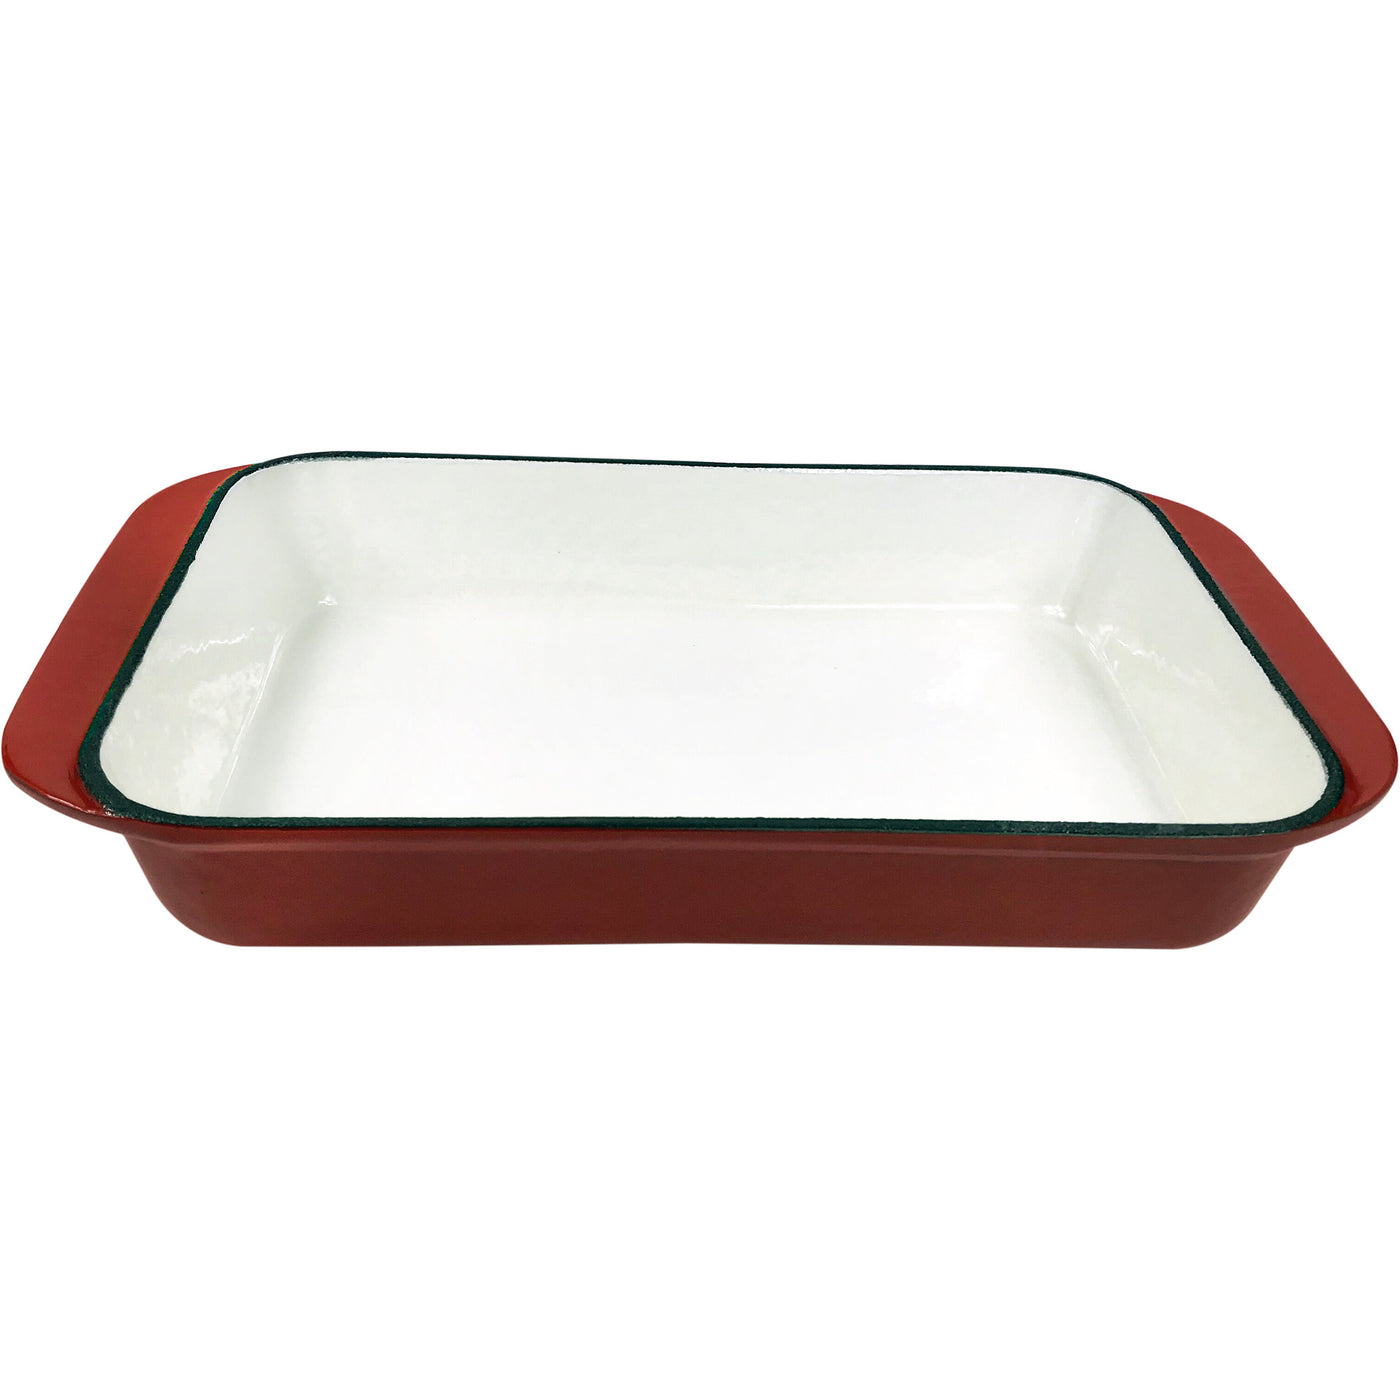 2.9 夸脱搪瓷铸铁矩形烤盘、砂锅盘、烤宽面条锅、深烤盘 - 红色